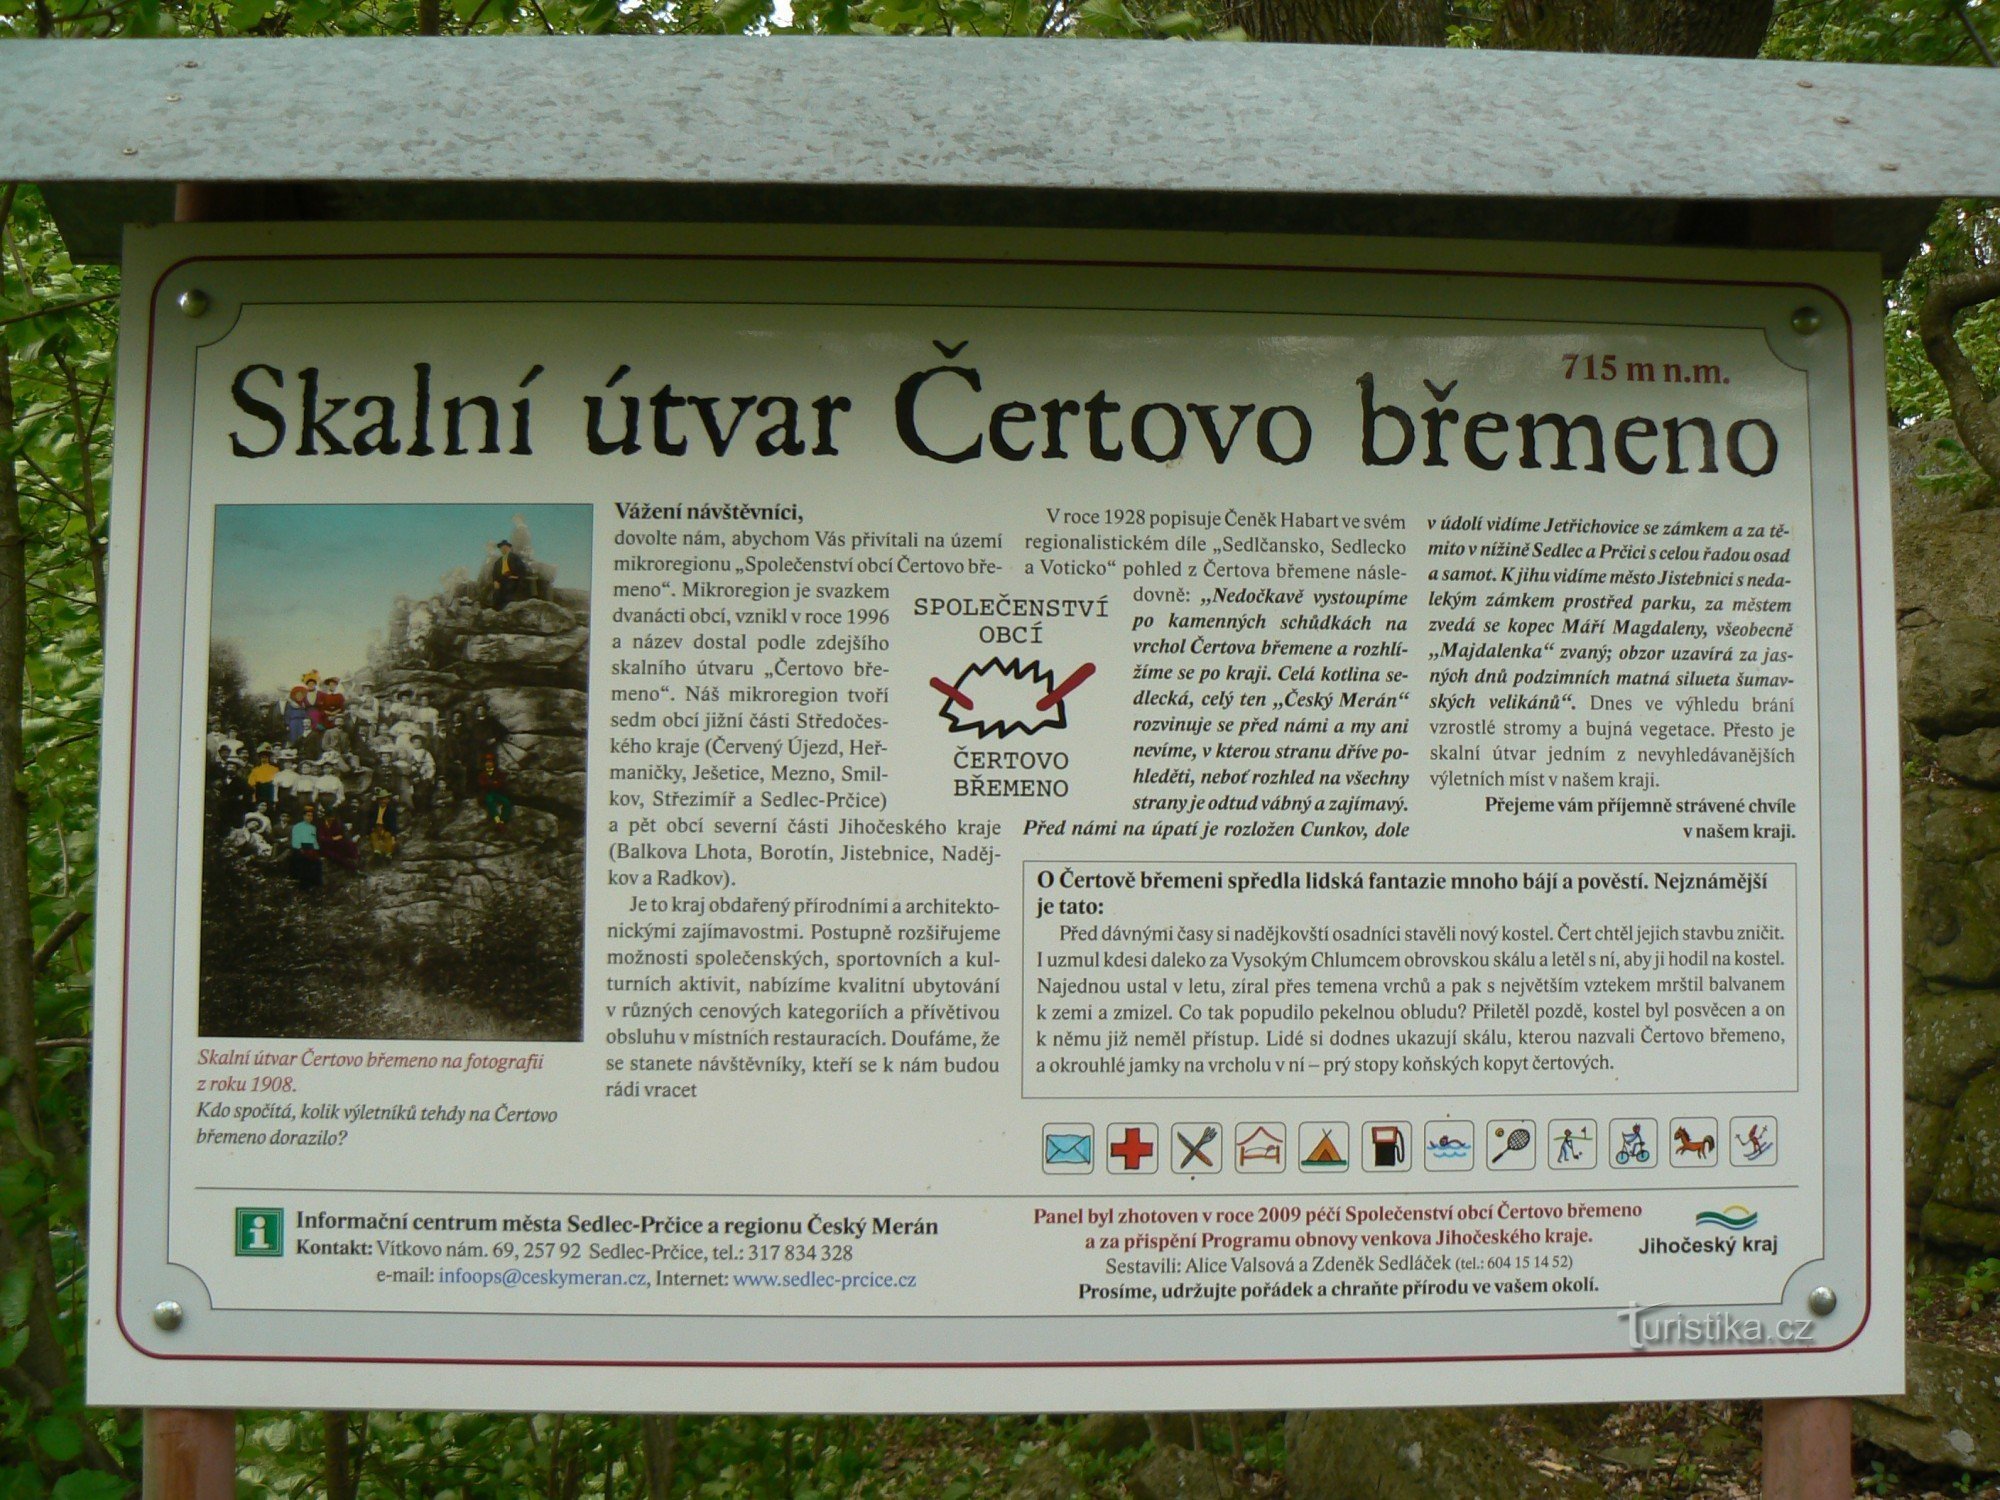 Gánh nặng của quỷ, Jistebnická vrchovina